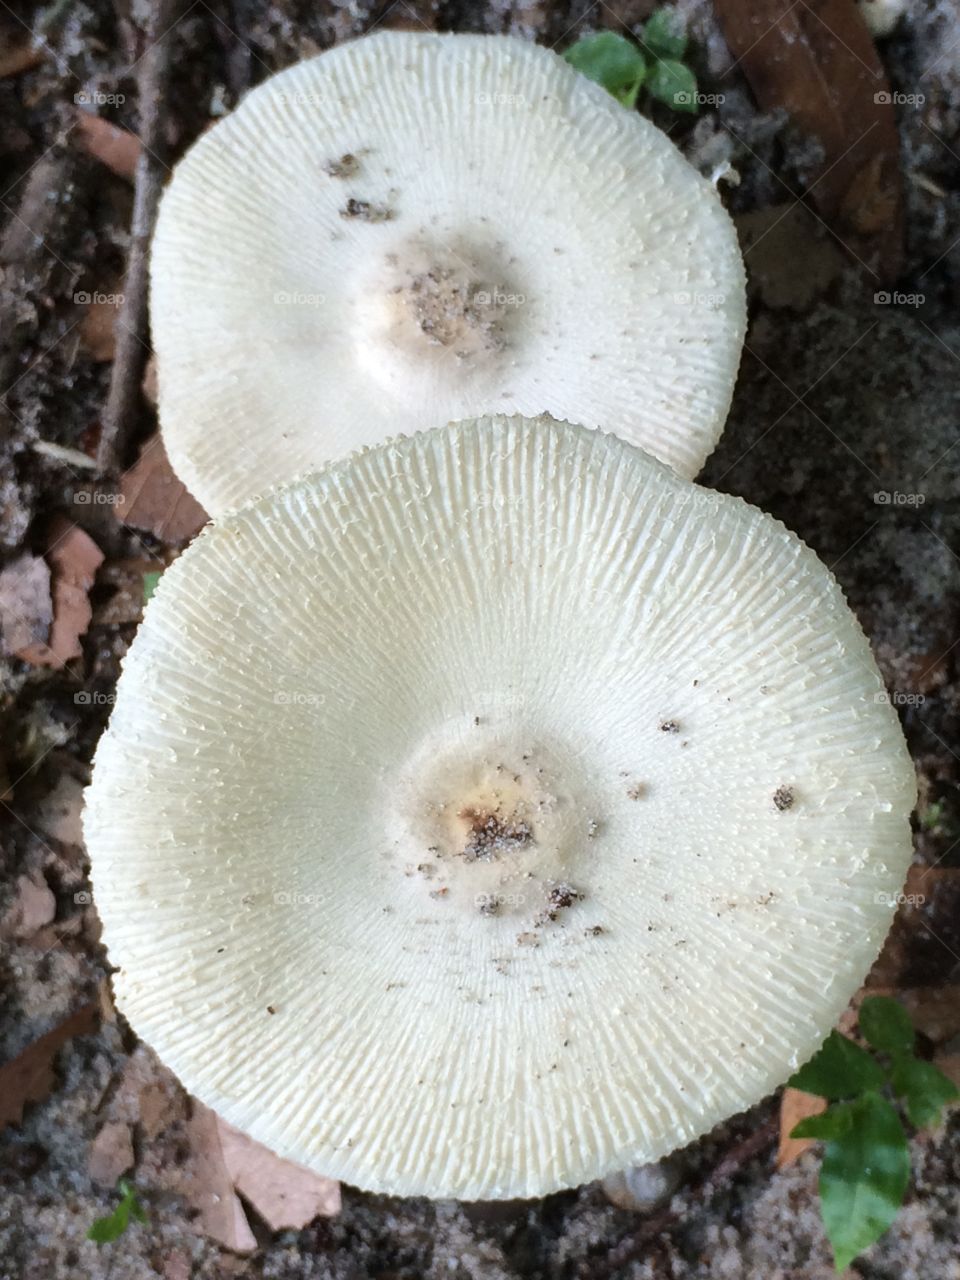 Topshroom